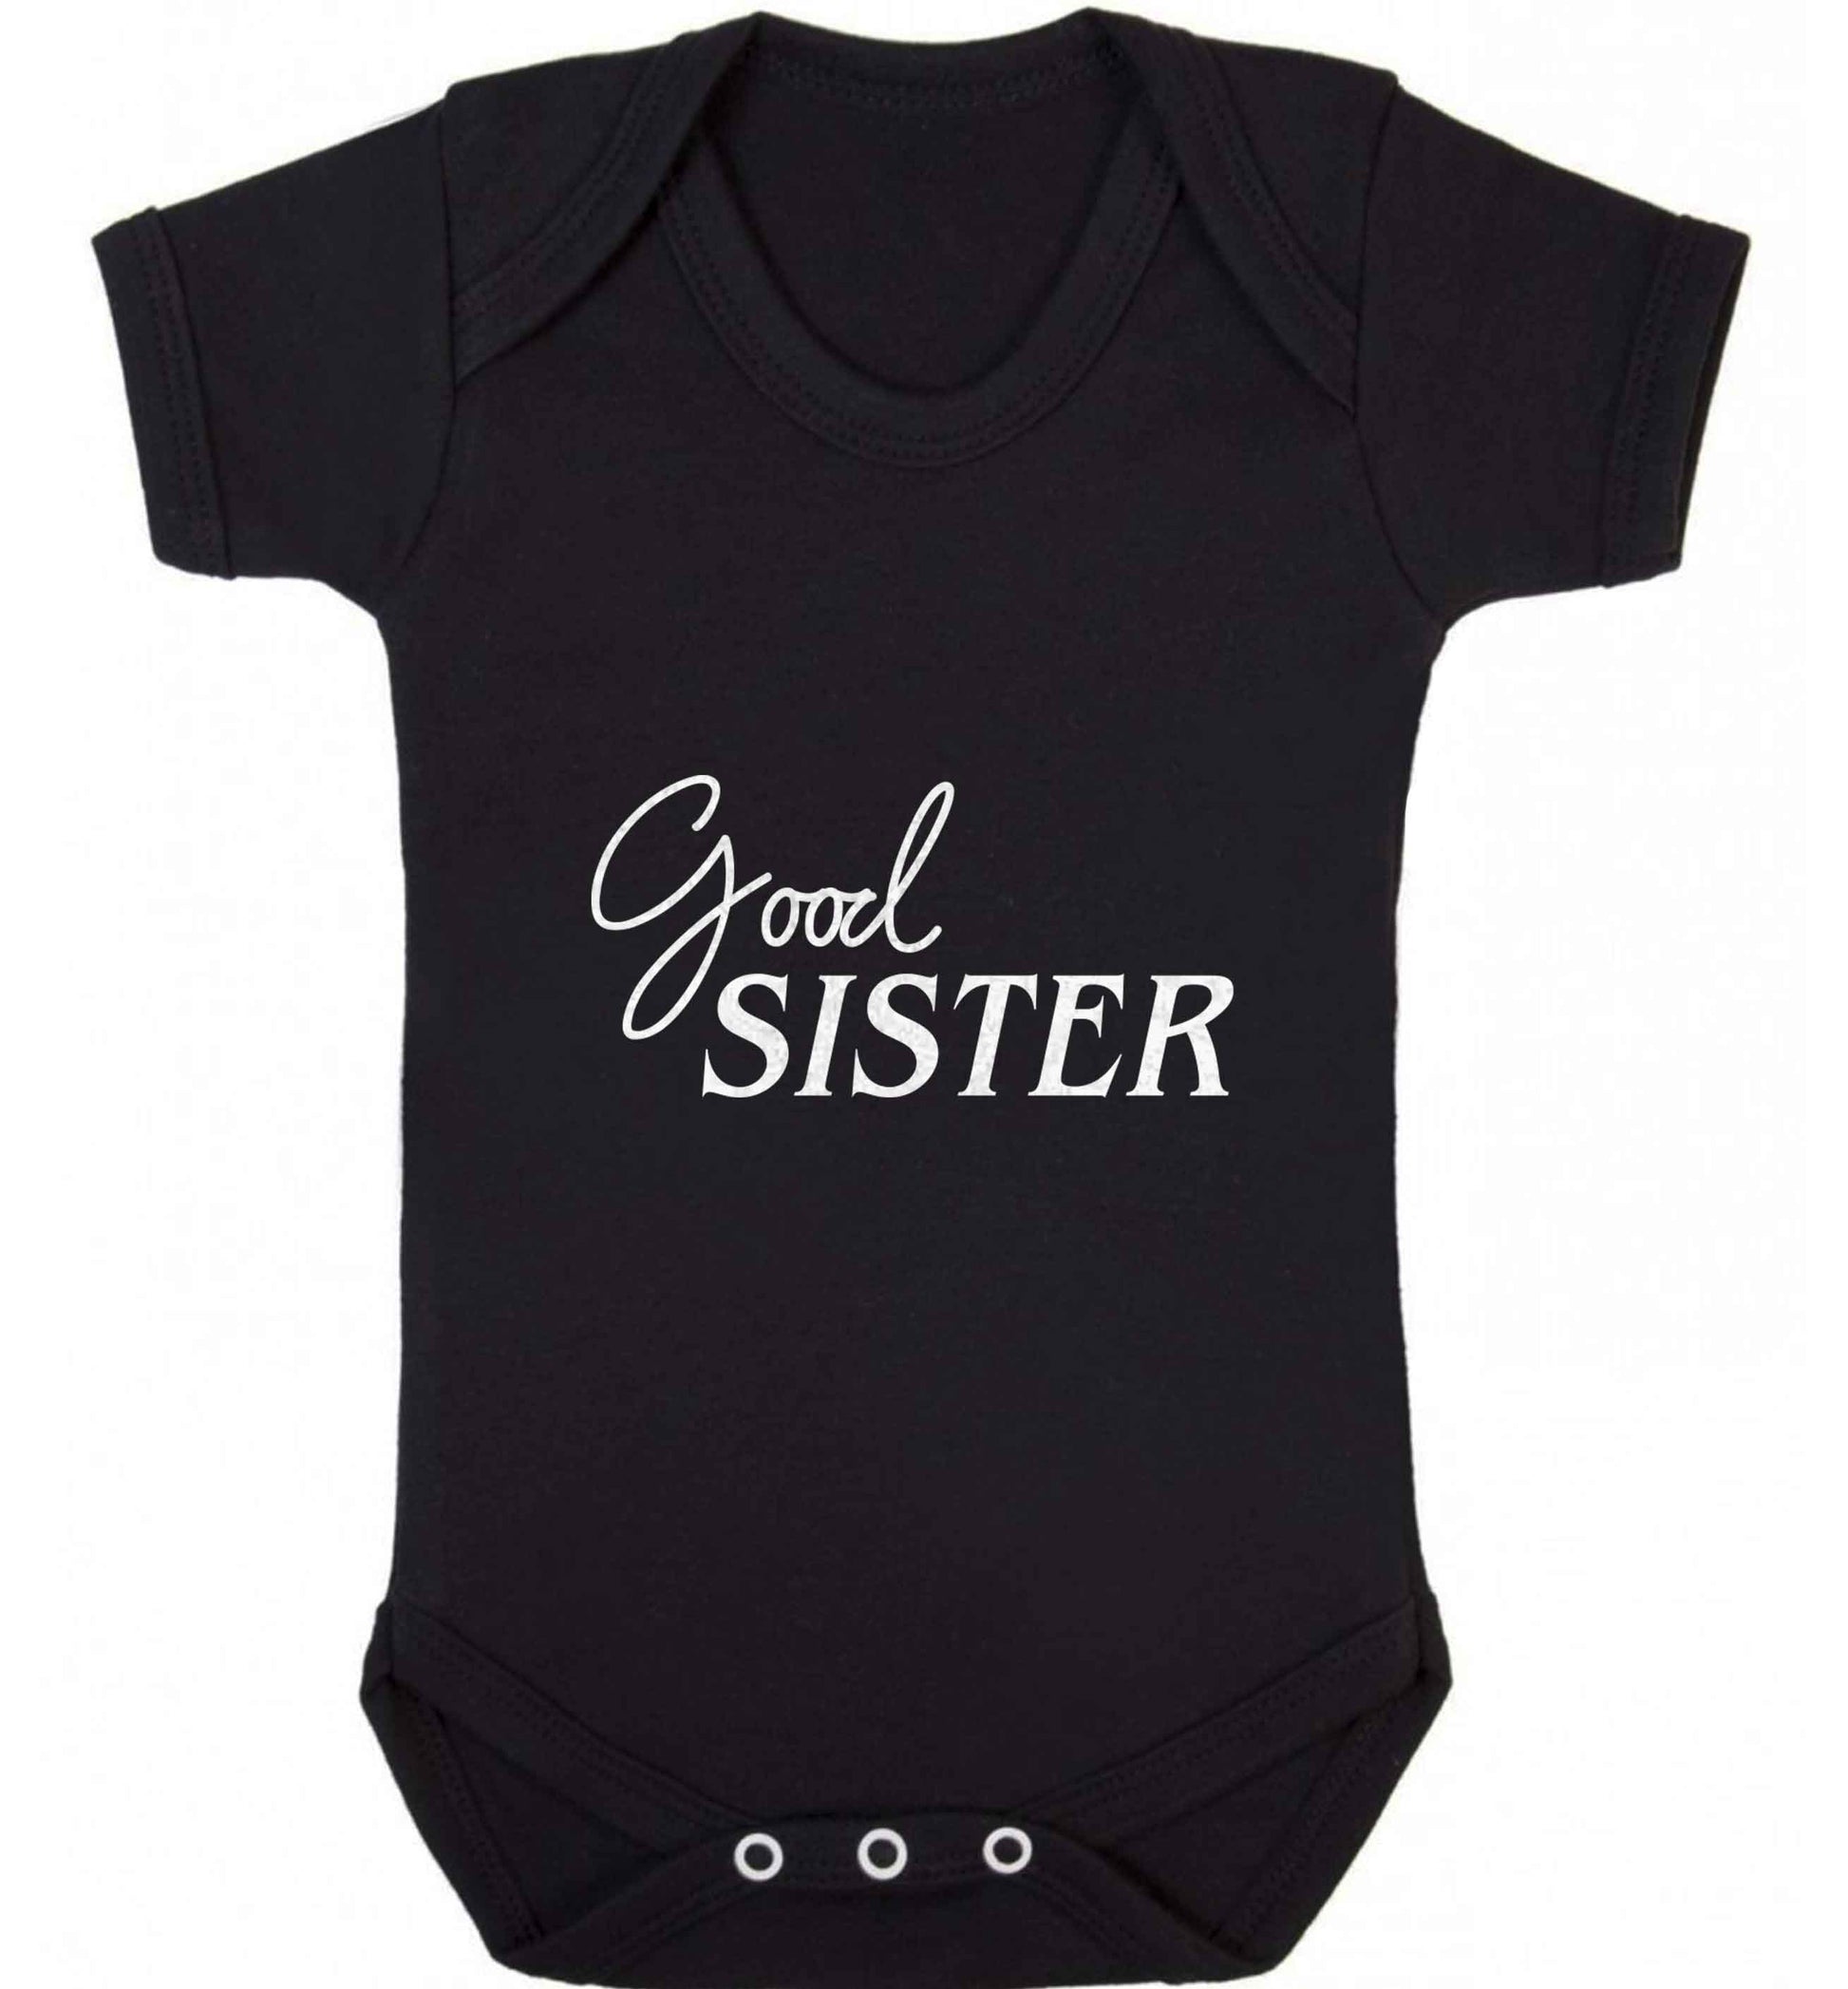 Good sister baby vest black 18-24 months